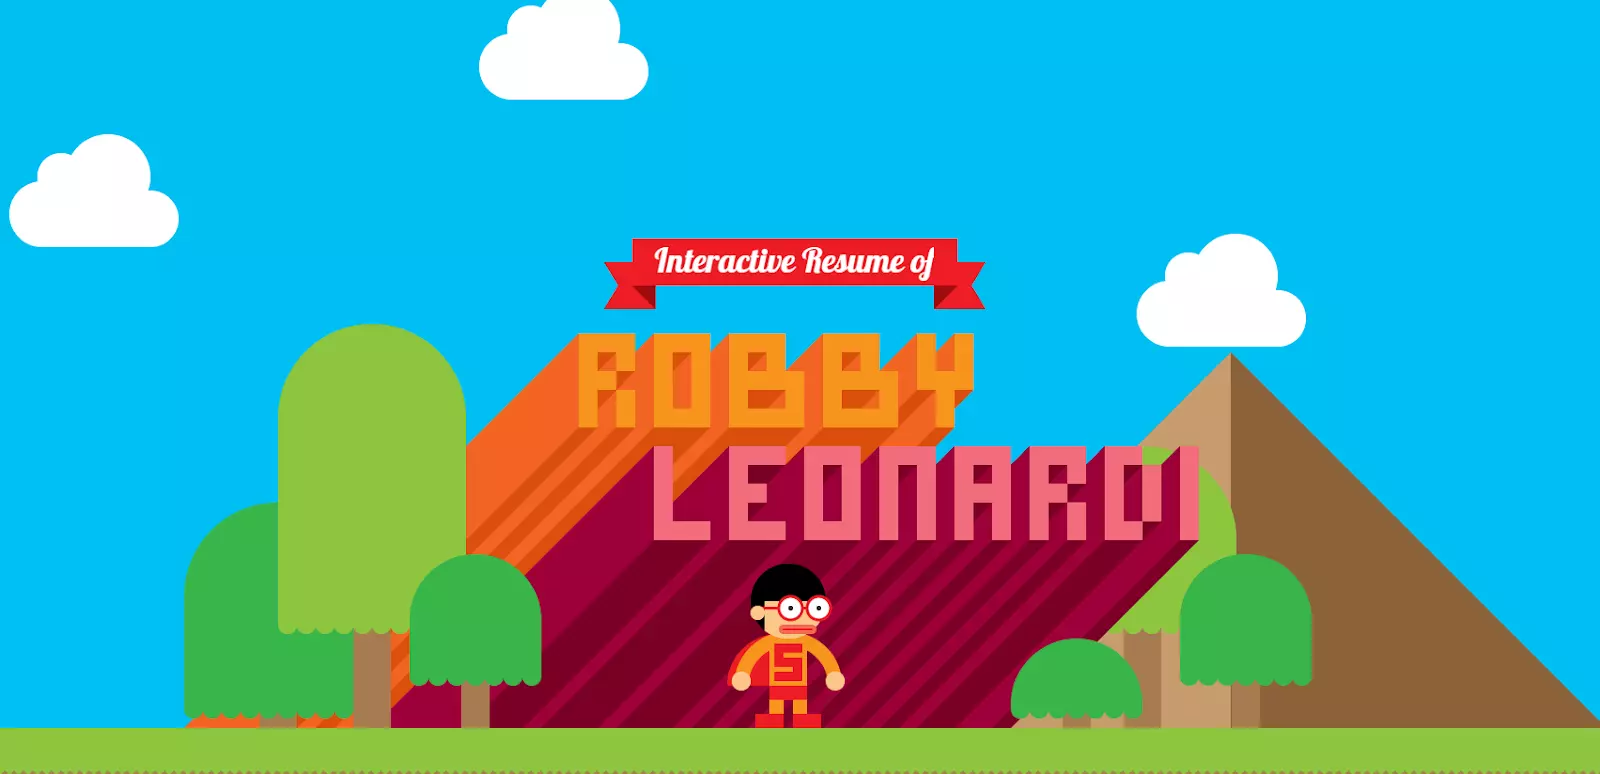 Portafolio de desarrollador front-end de Robby Leonardi con elementos de gamificación